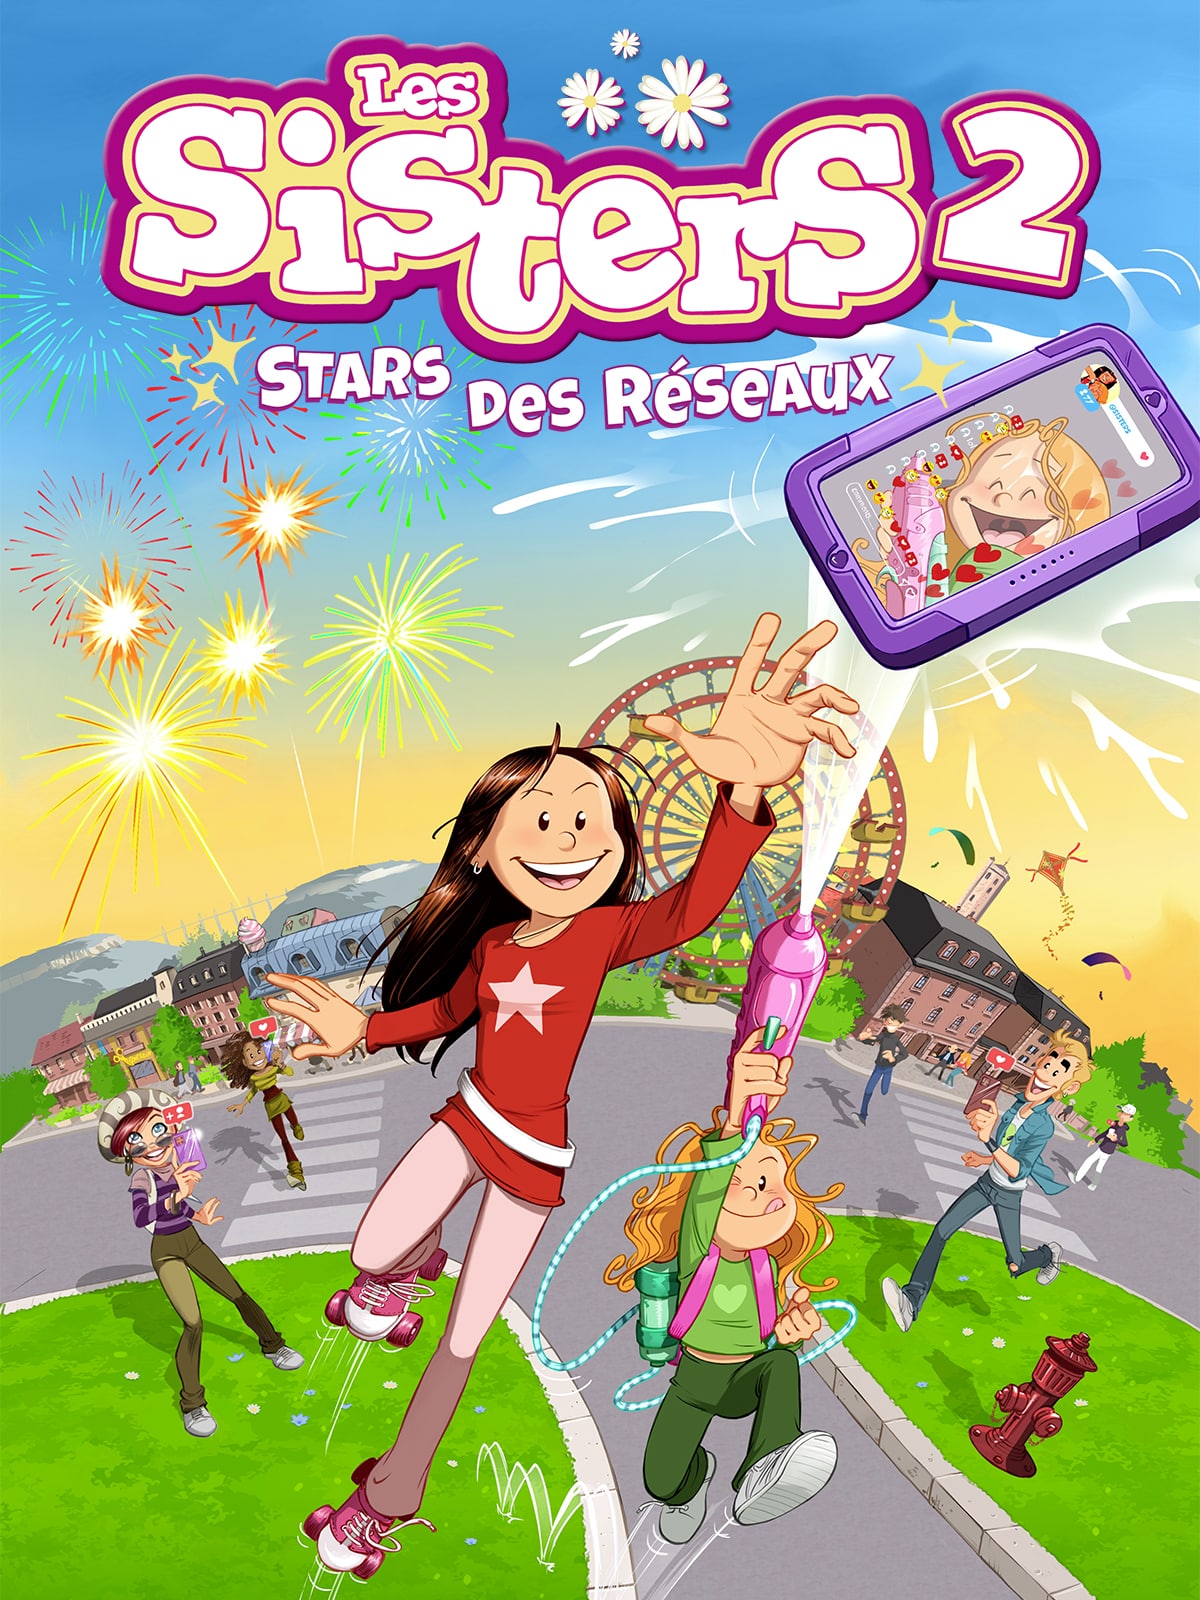 Les Sisters 2 Stars Des Réseaux sur SWITCH, tous les jeux vidéo